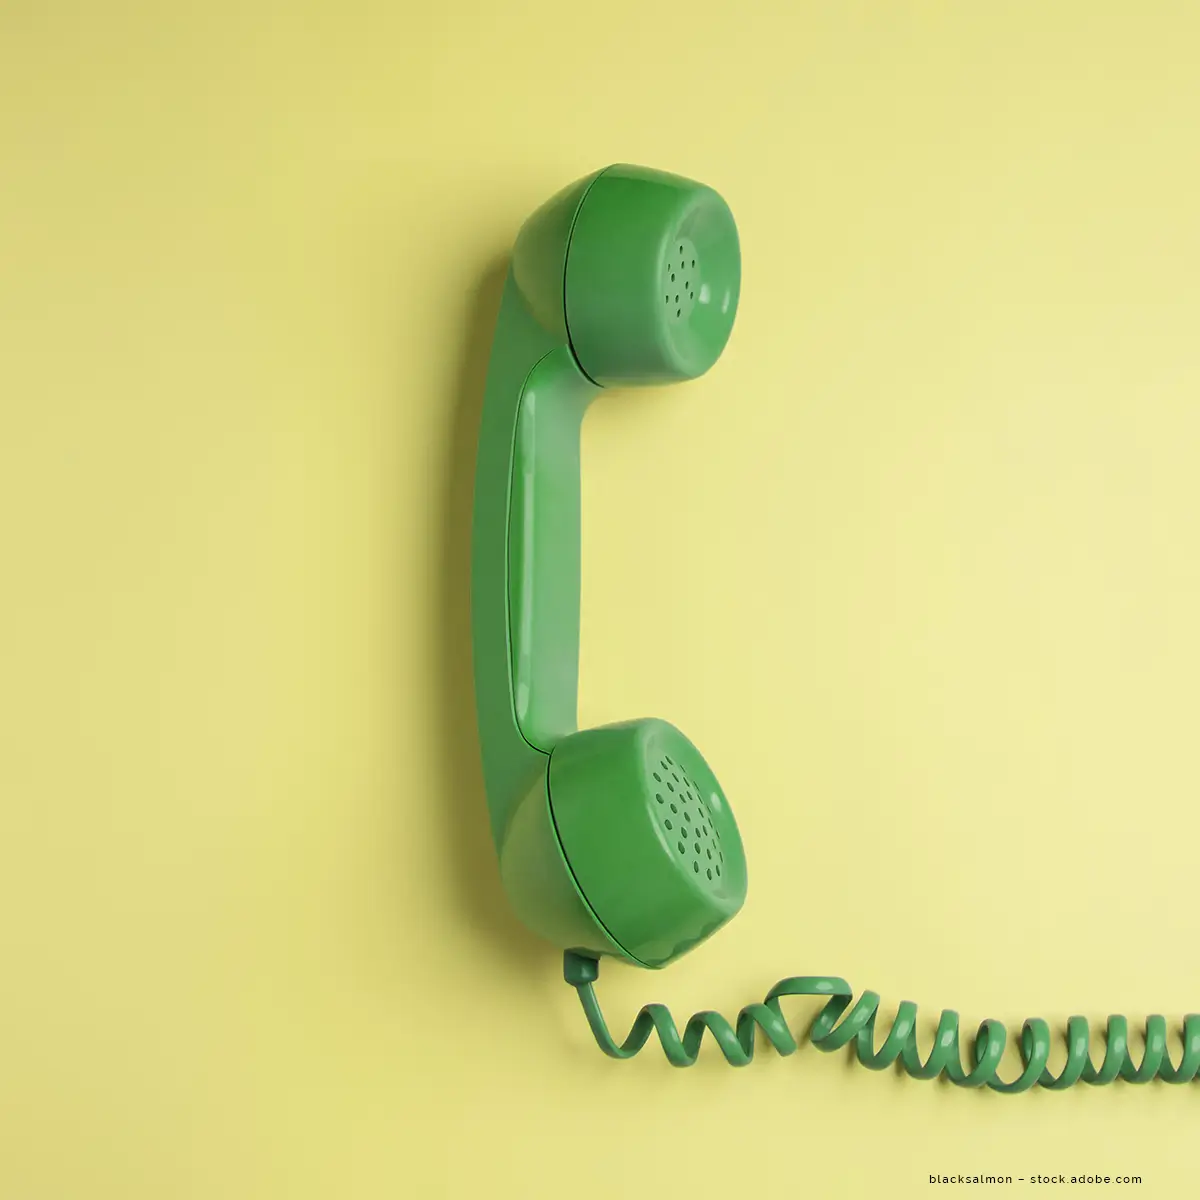 Ein grünes Telefon vor einem gelben Hintergrund.